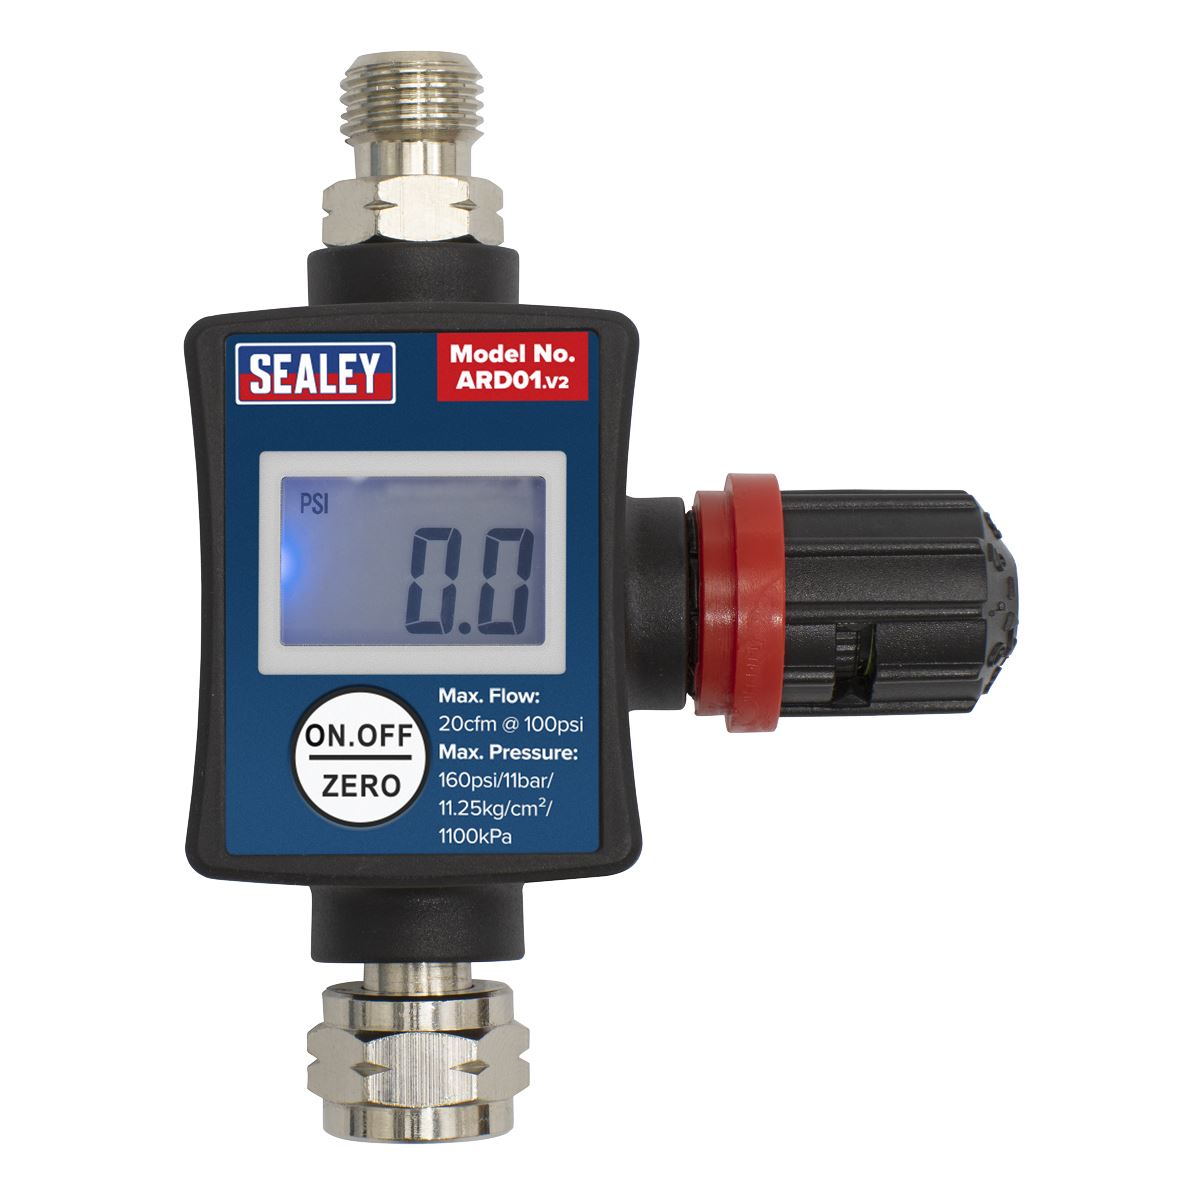 Sealey On Gun Digital Air Pressure Regulator Gauge Spray Tool LED Display